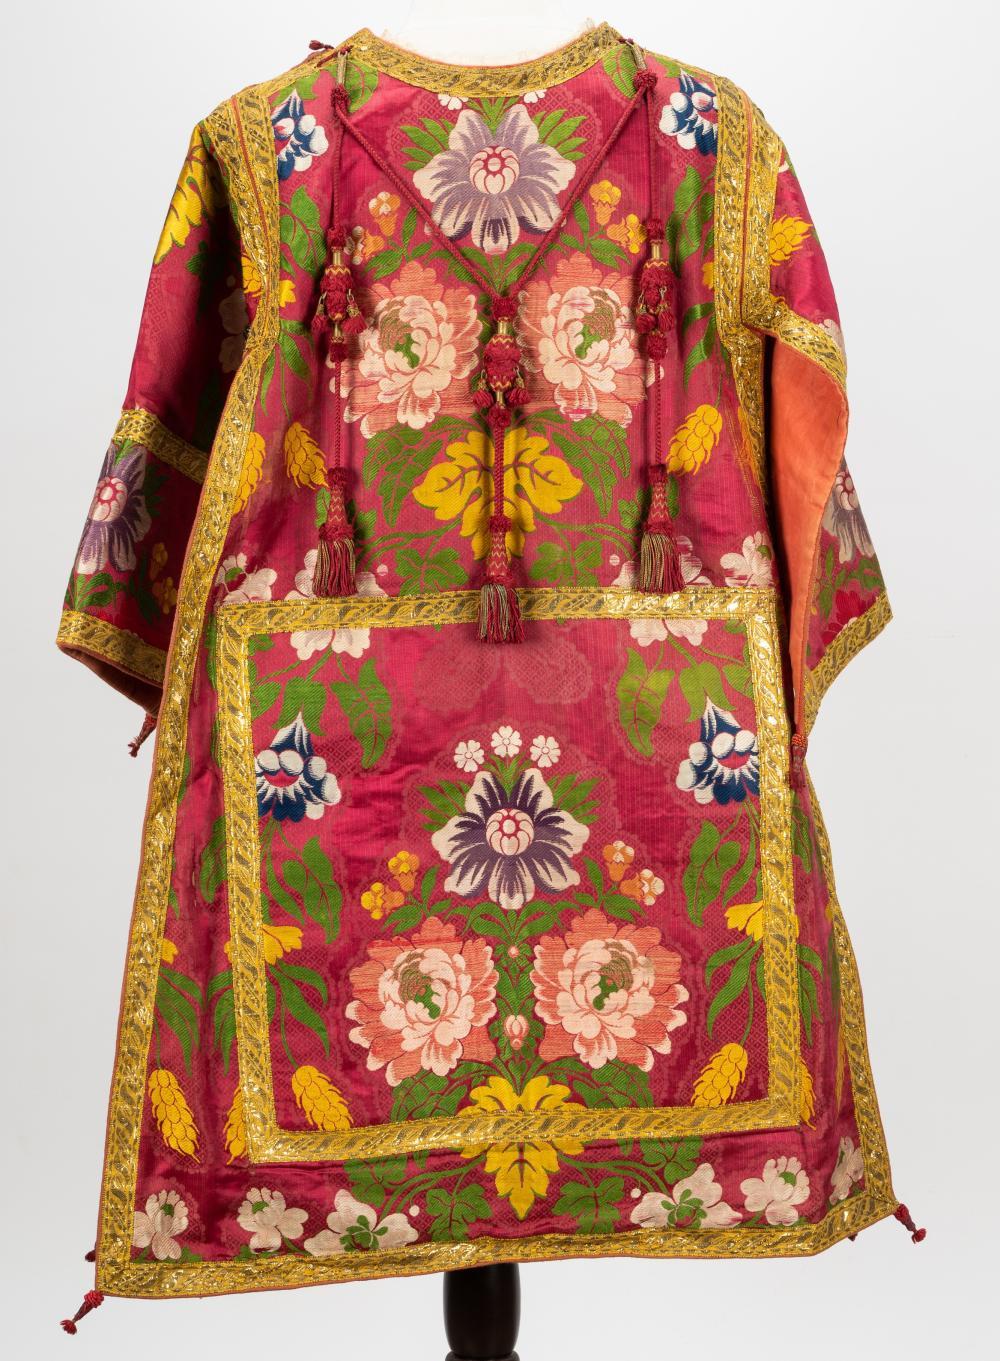 Robe dalmatique religieuse en soie coloniale espagnole Chasuble de Coloni, Textile, fait à la main en soie.